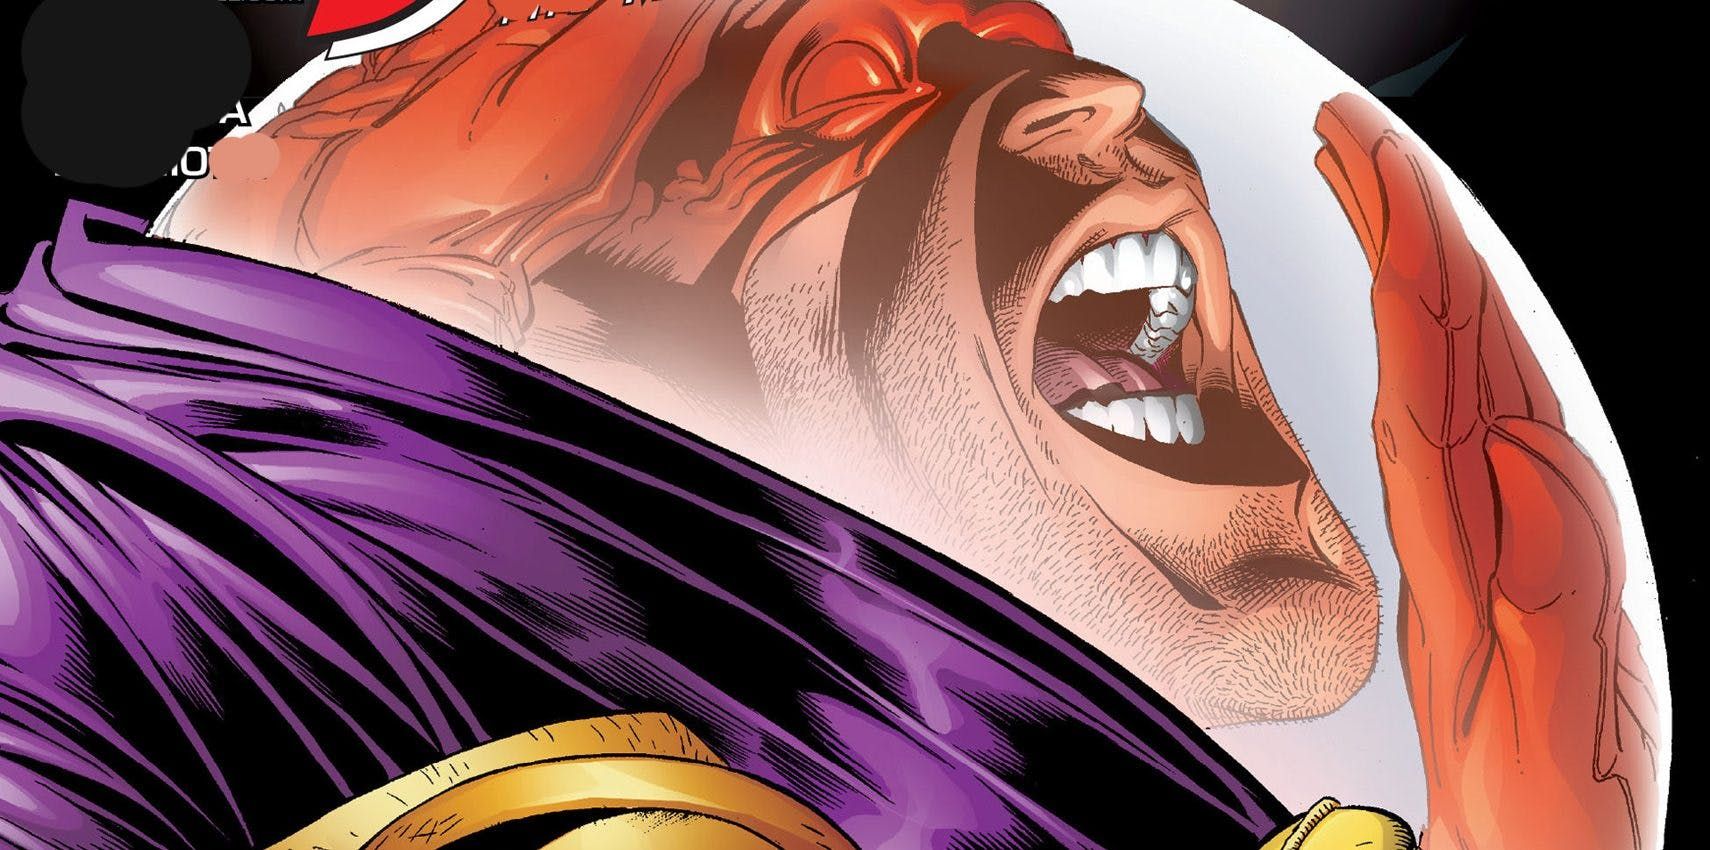 Daredvil reflected in Mysterio's helmet in Marvel Comics